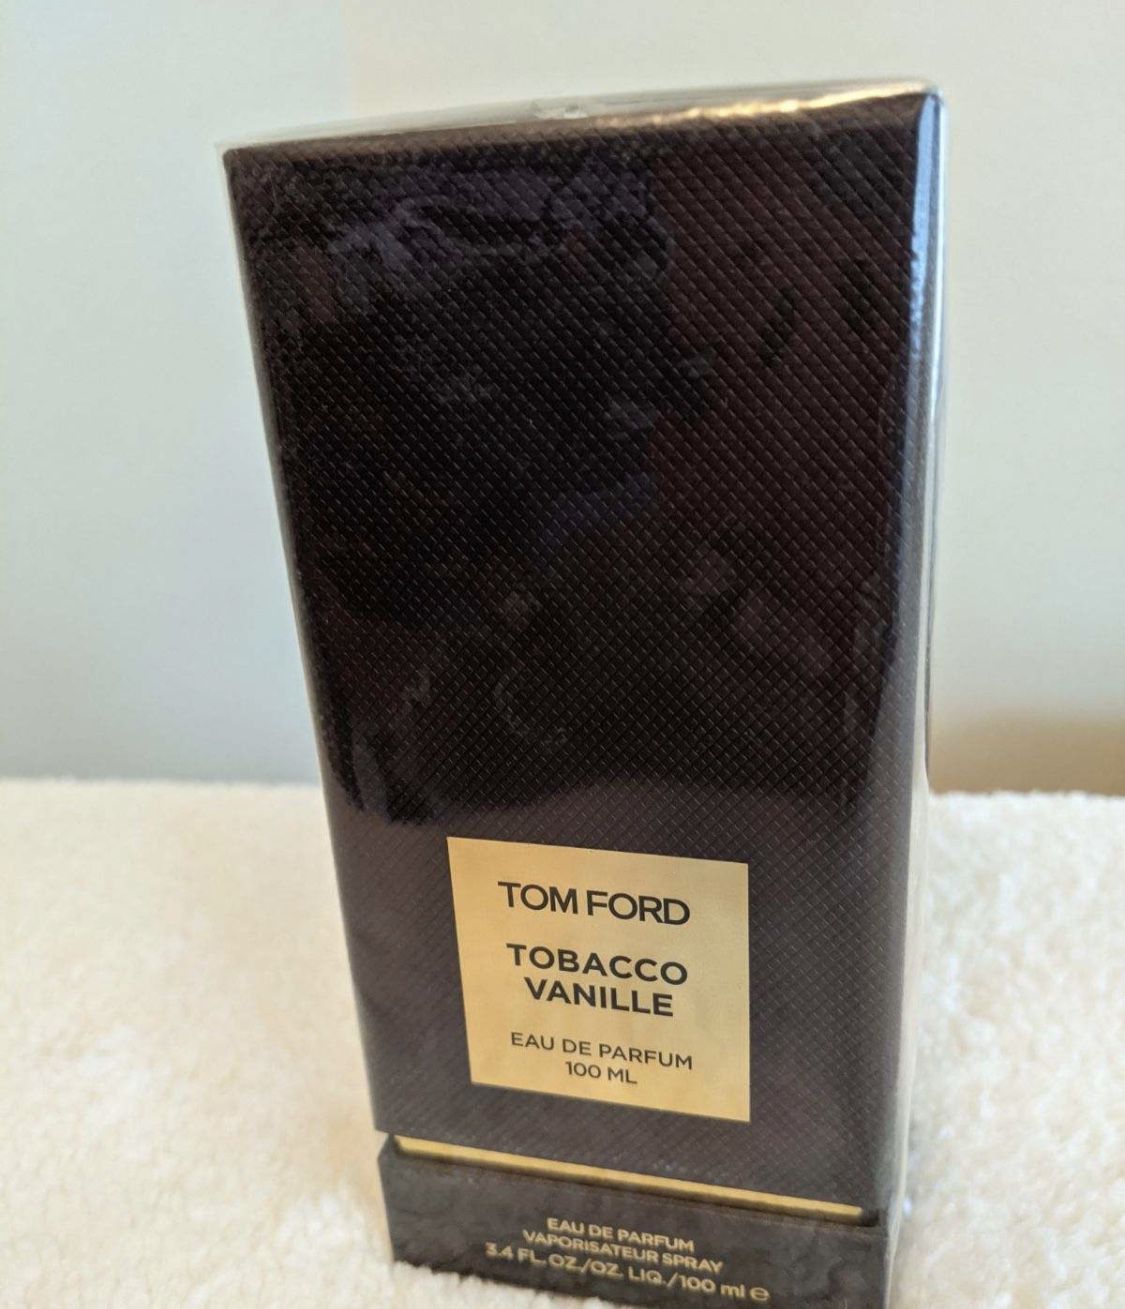 Tom Ford Size: 3.4 oz/ 100 mL Eau de Parfum